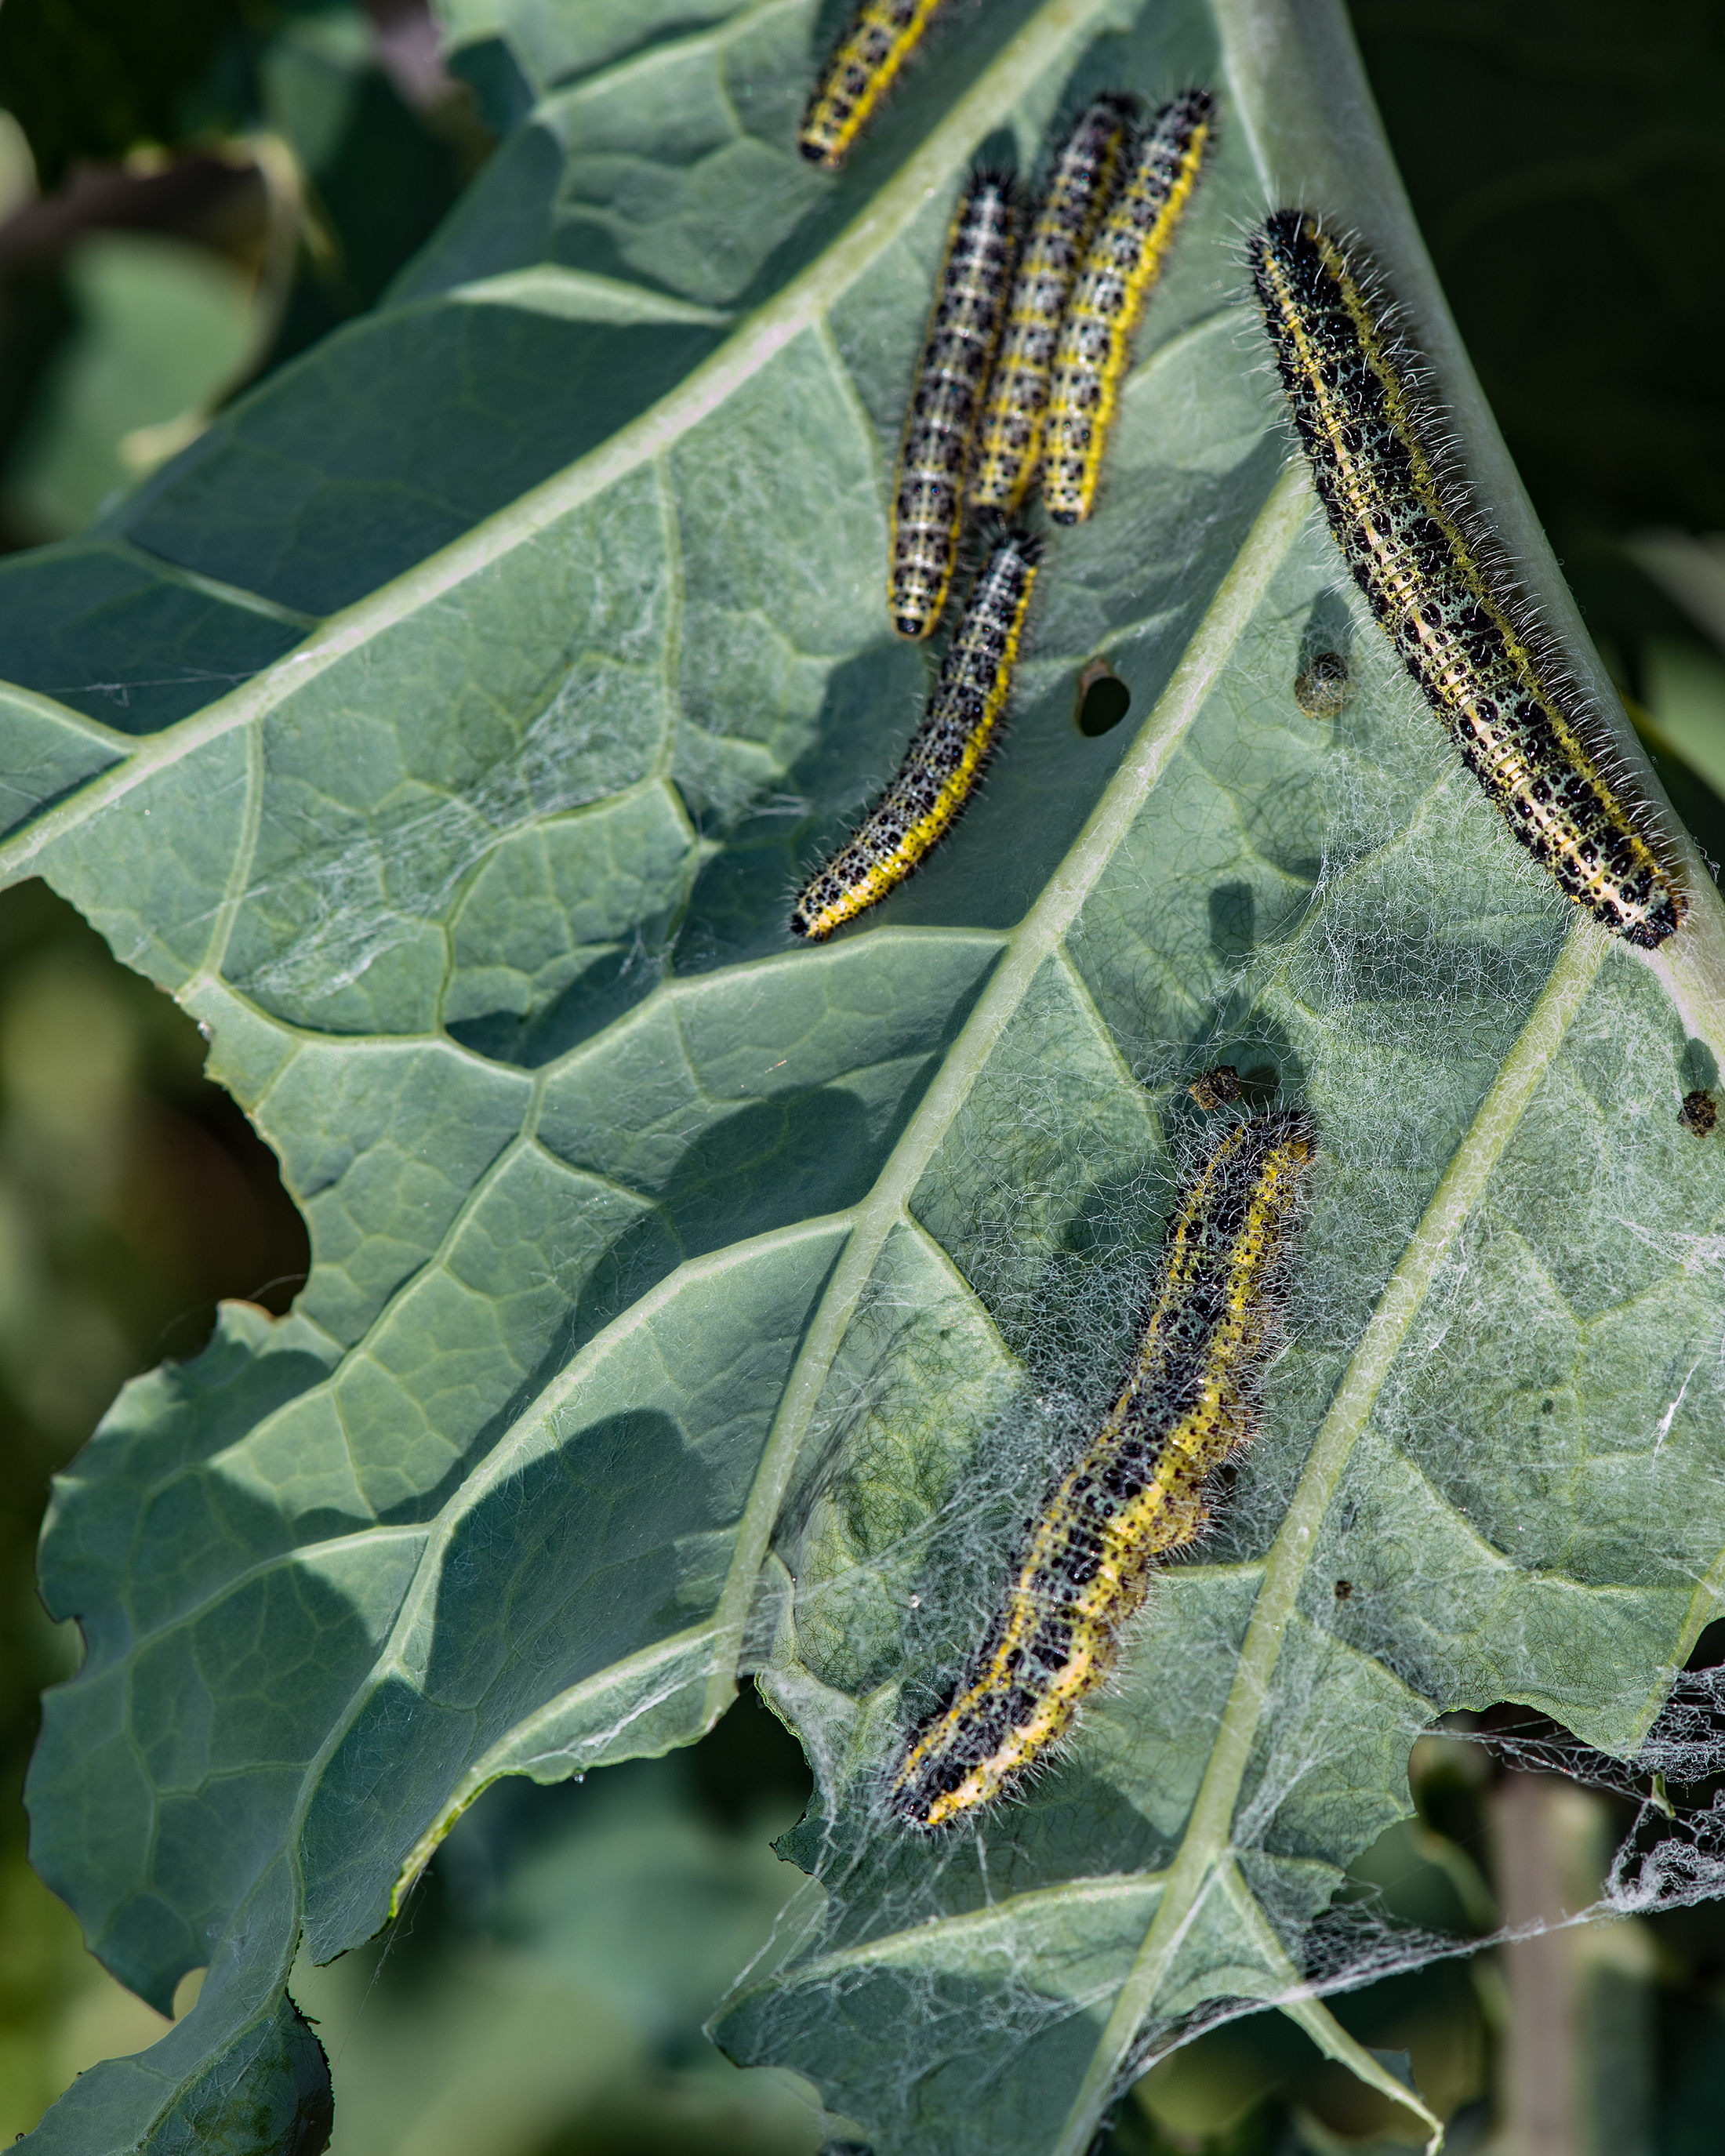 Caterpillars on brassicas – Which? Gardening Helpdesk